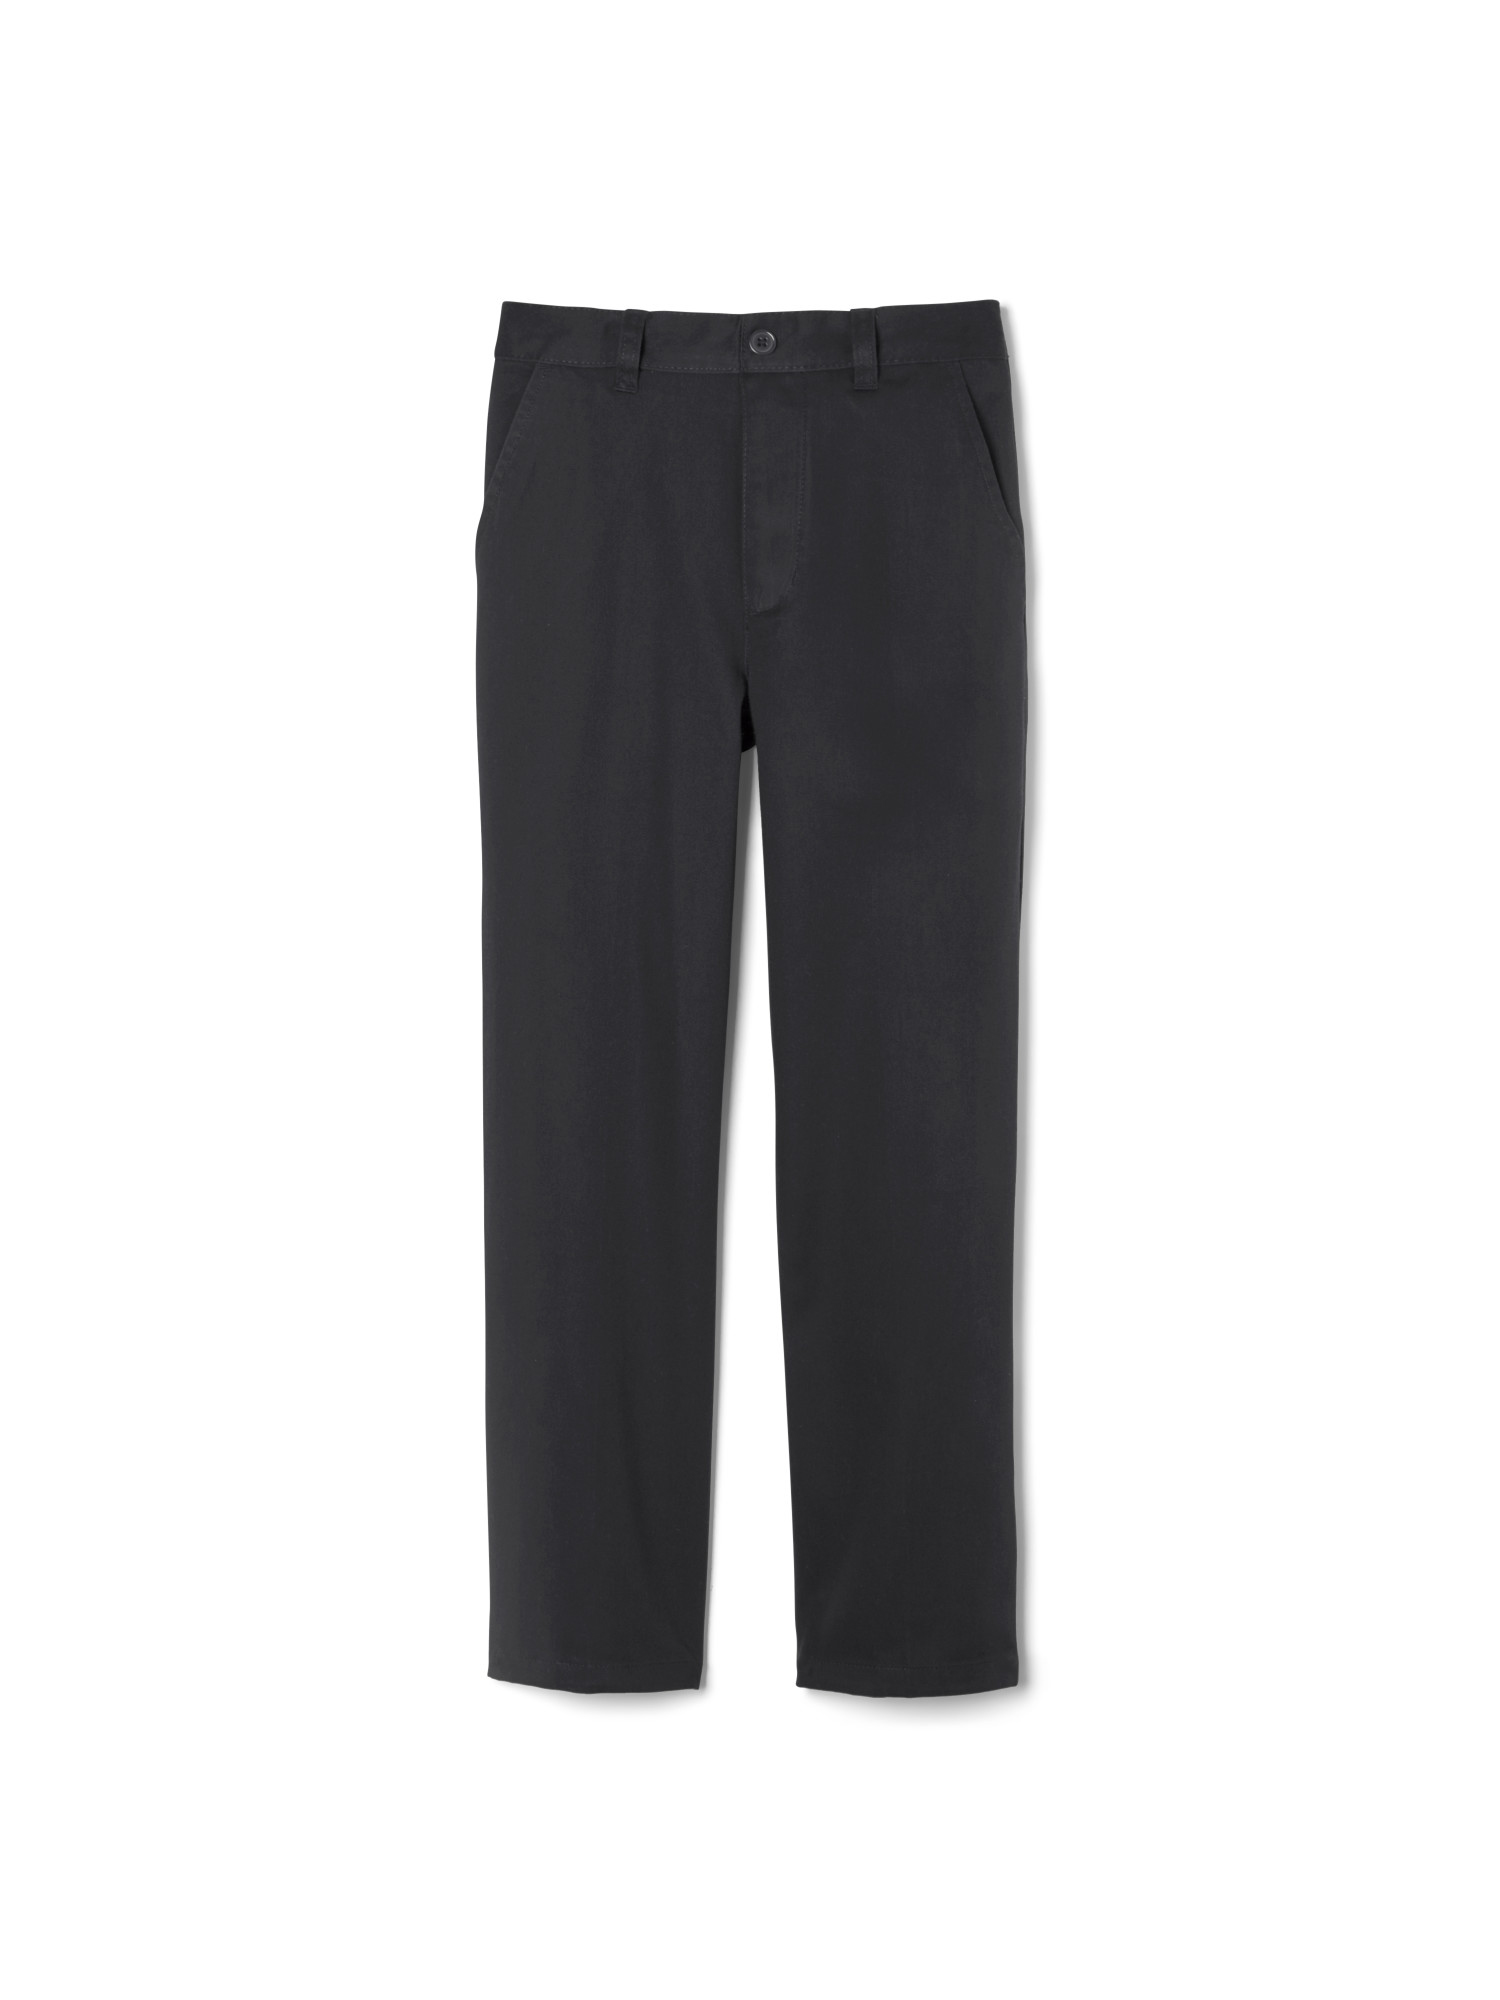 Details about  / Chaps Boys HUSKY FIT Black Chino Dress Uniform Pants Casual 100/% Cotton Flat